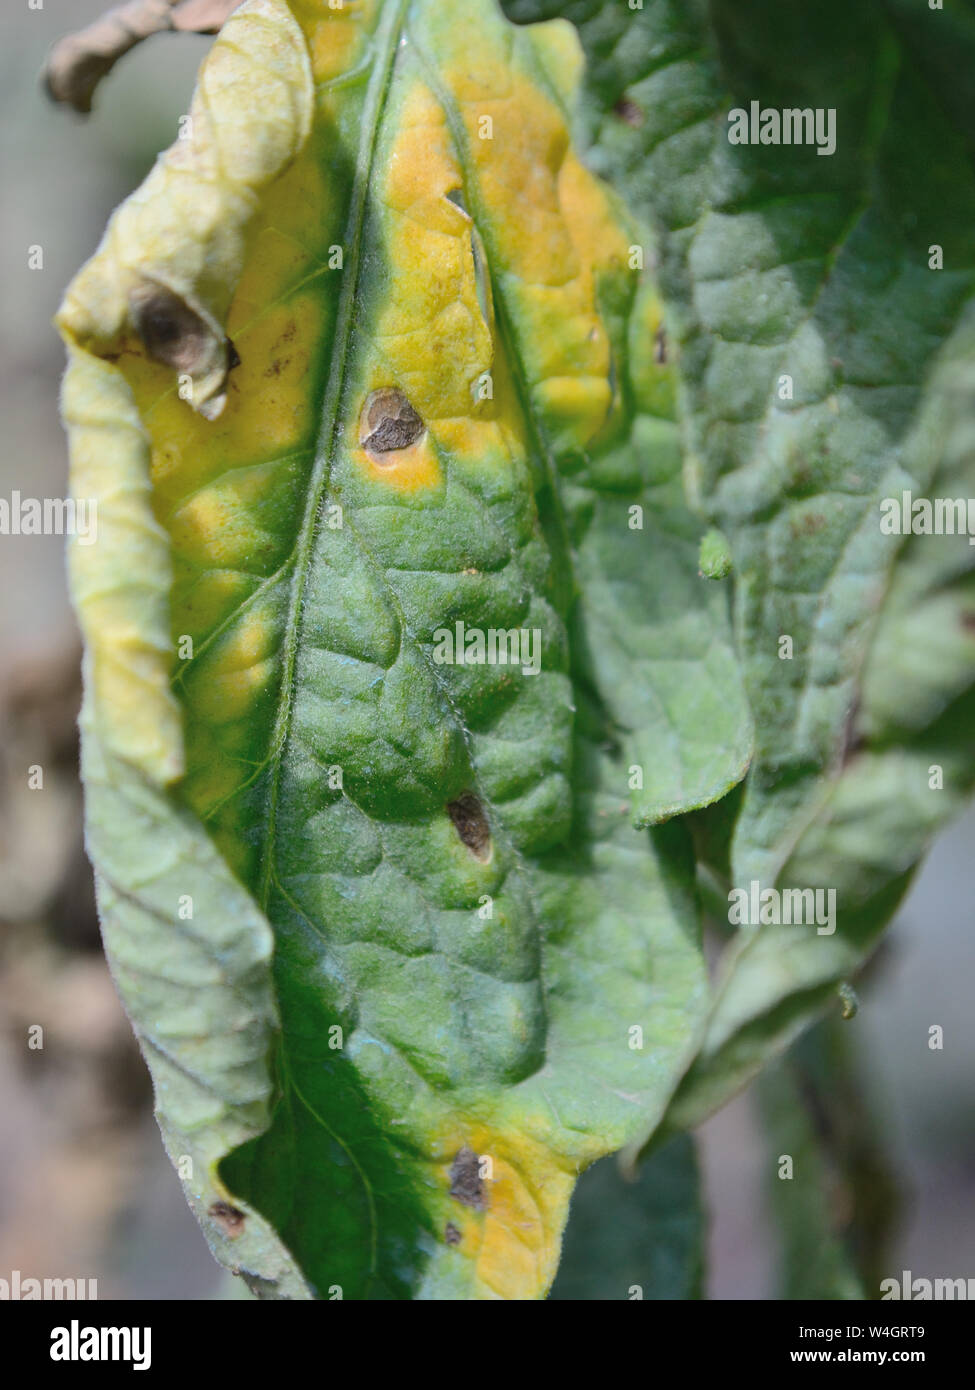 Tomato leaf early-blight disease, Alternaria solani Stock Photo